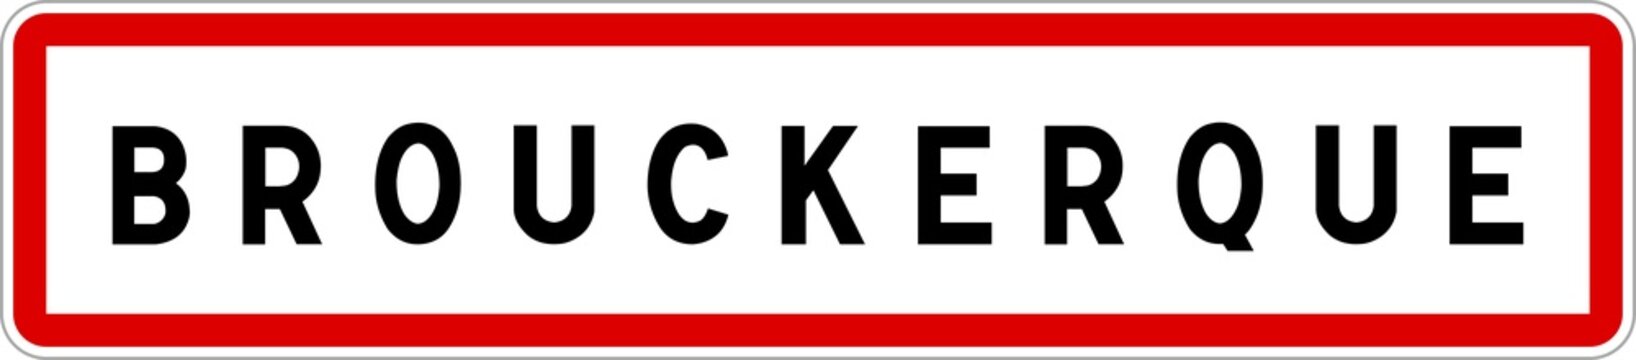 Panneau entrée ville agglomération Brouckerque / Town entrance sign Brouckerque